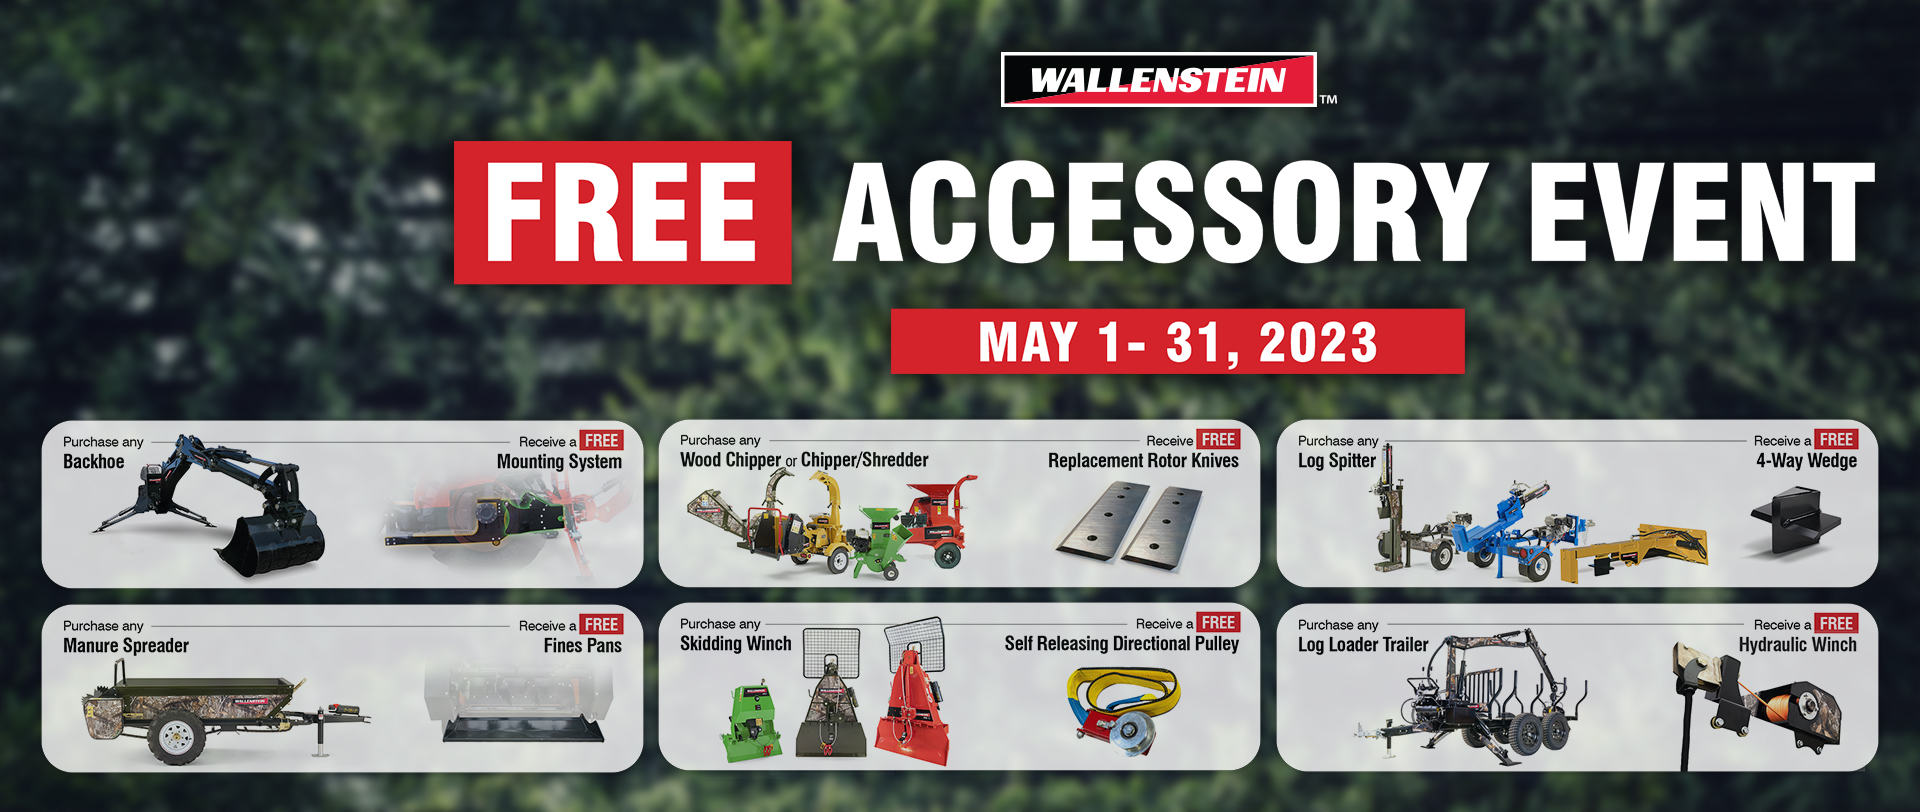 Wallenstein Free Accessory Event